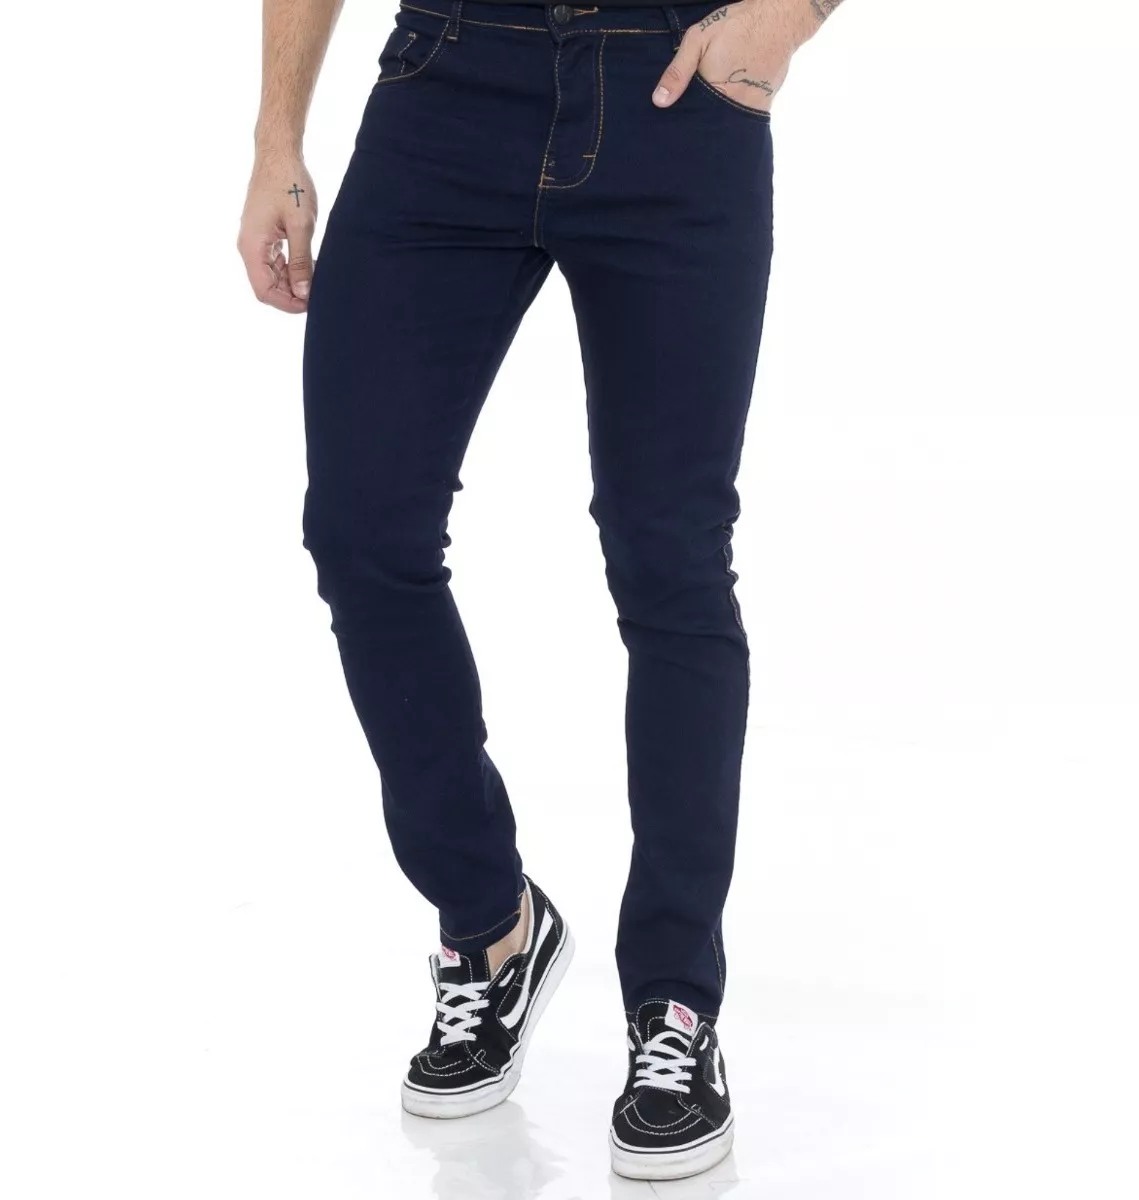 Calça Jeans Skinny Masculina Casual Várias Cores